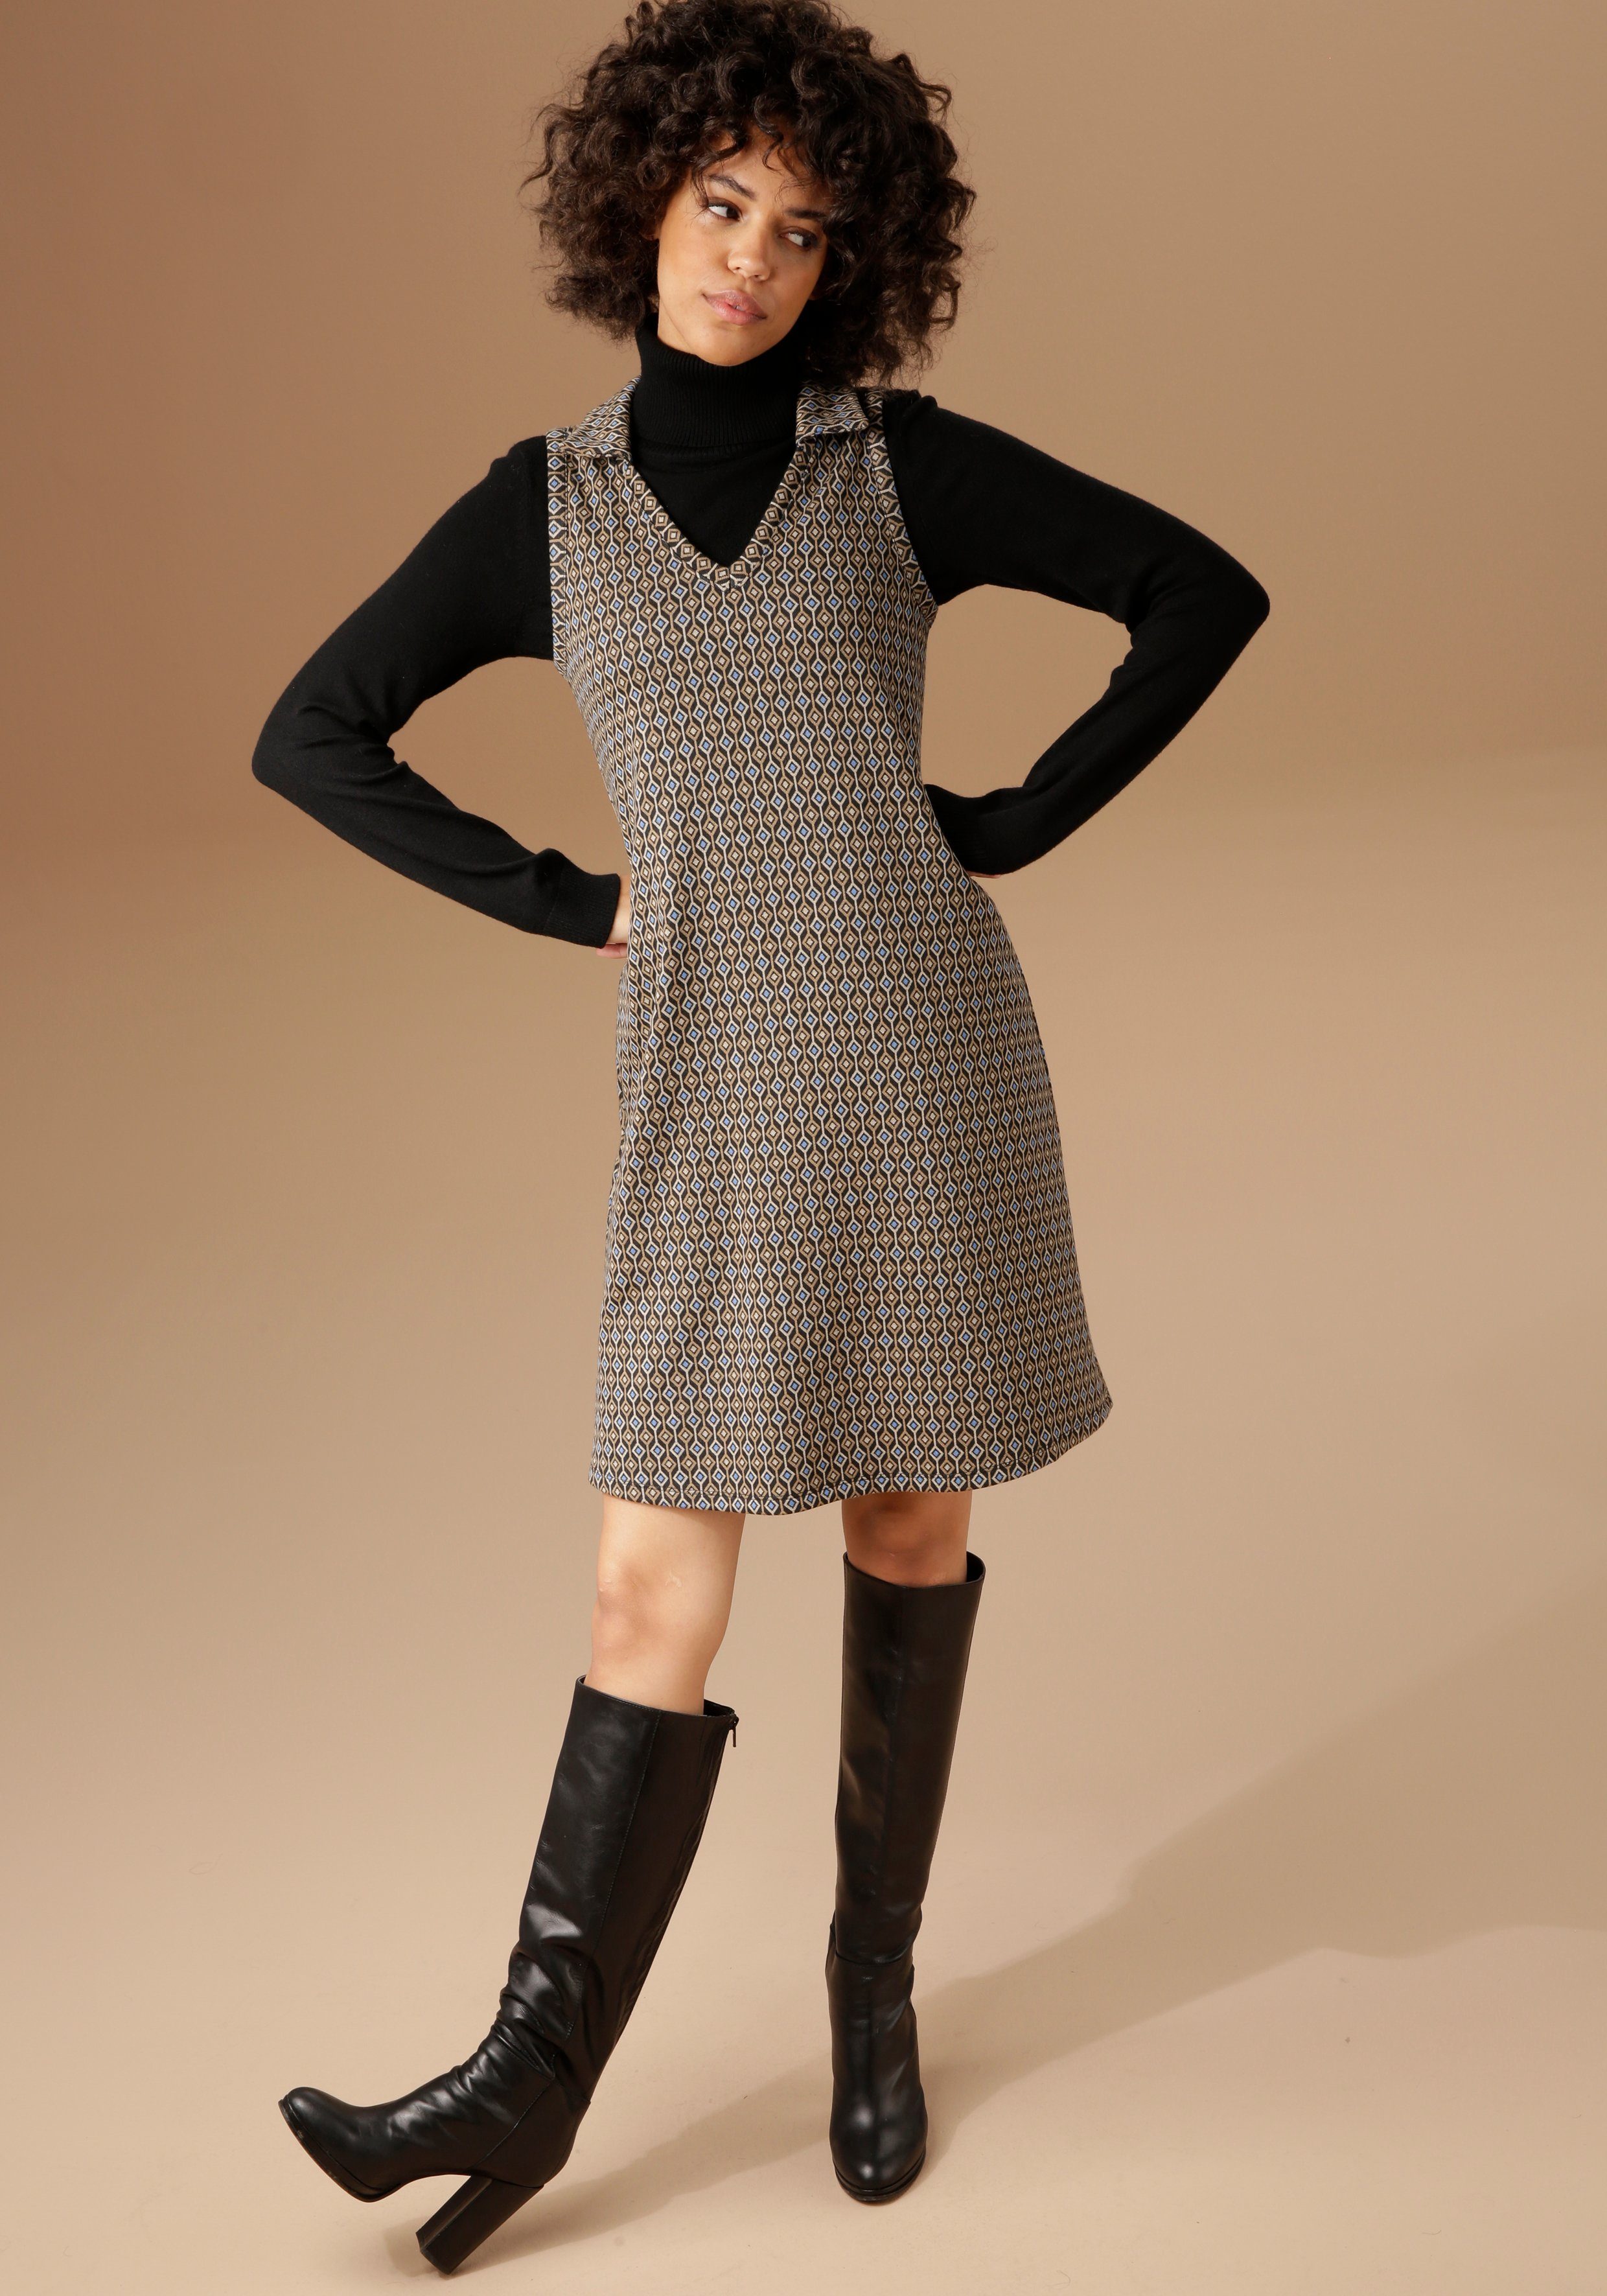 Neue Artikel sind eingetroffen 1 Aniston CASUAL Jerseykleid im angesagtem Retro-Muster